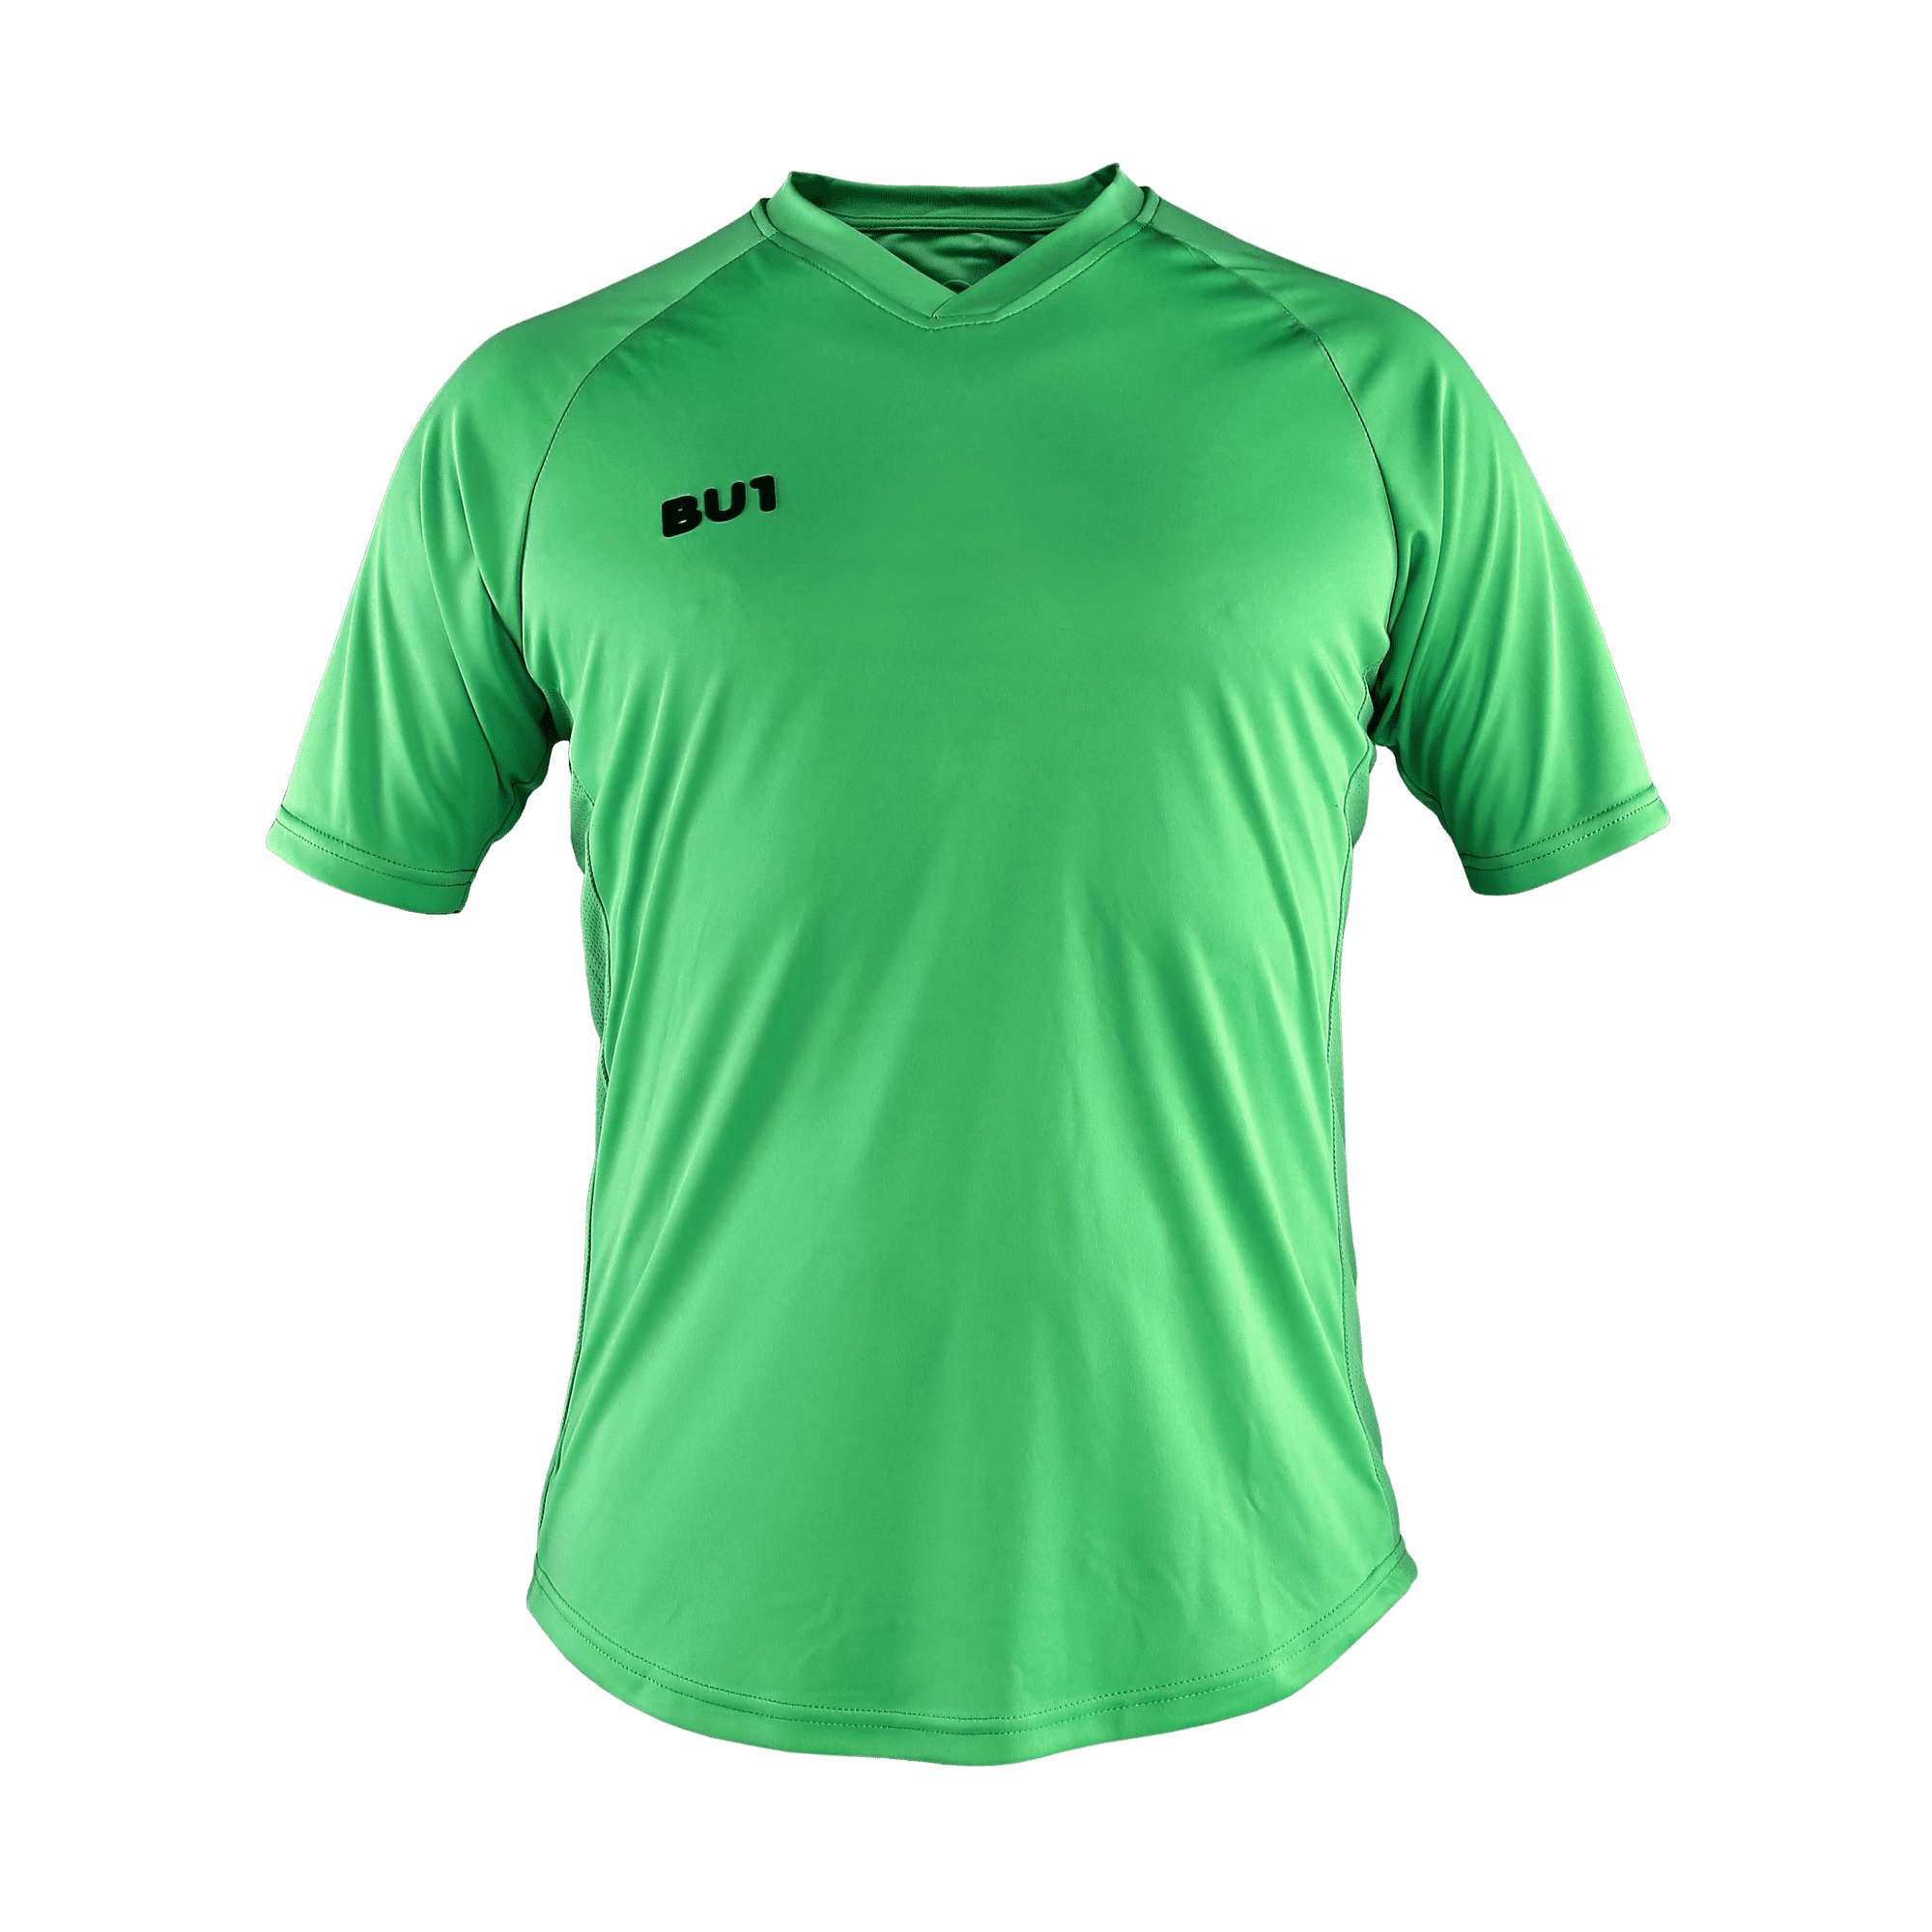 BU1 jersey 22 green